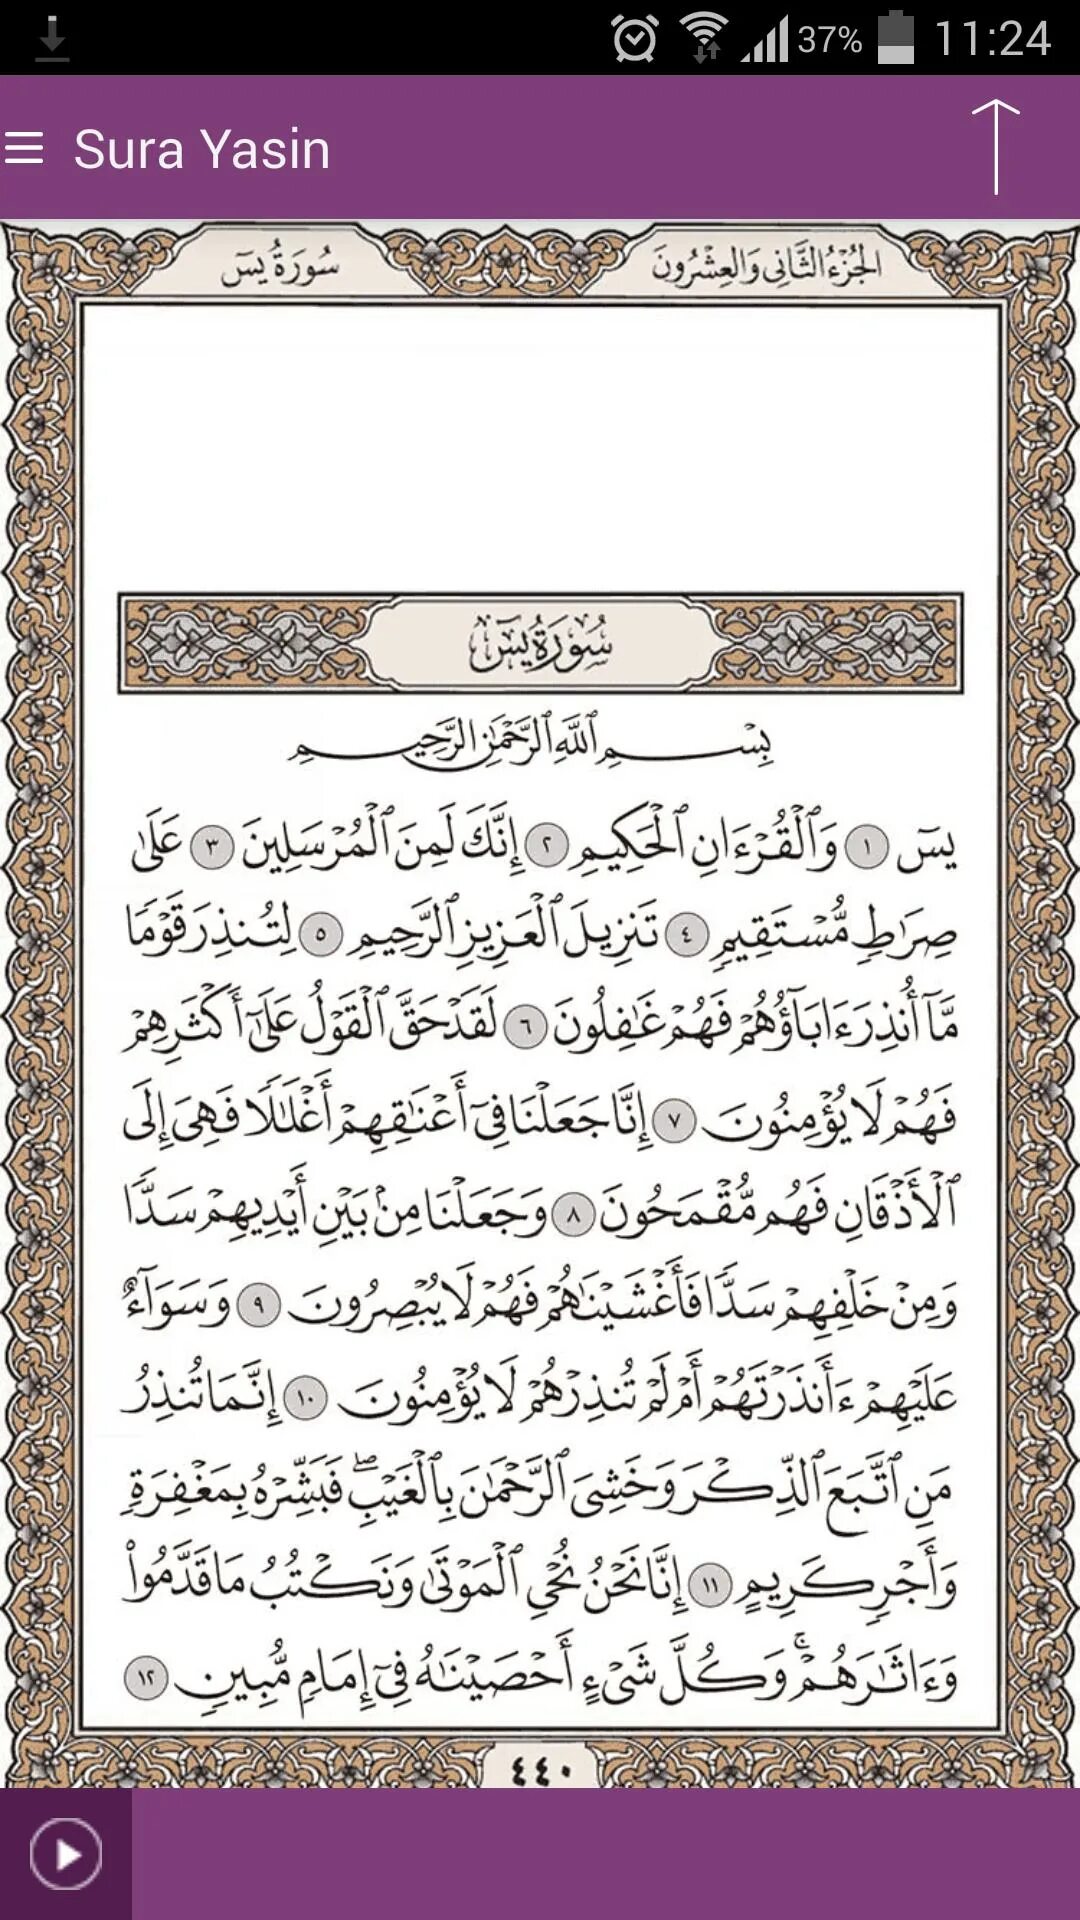 Сура ясин на арабском языке. Коран Сура ясин. Сура ясин 1 Мубин. Ясин Коран 2 страниц. Сура ясин 1 и 2 Мубин.